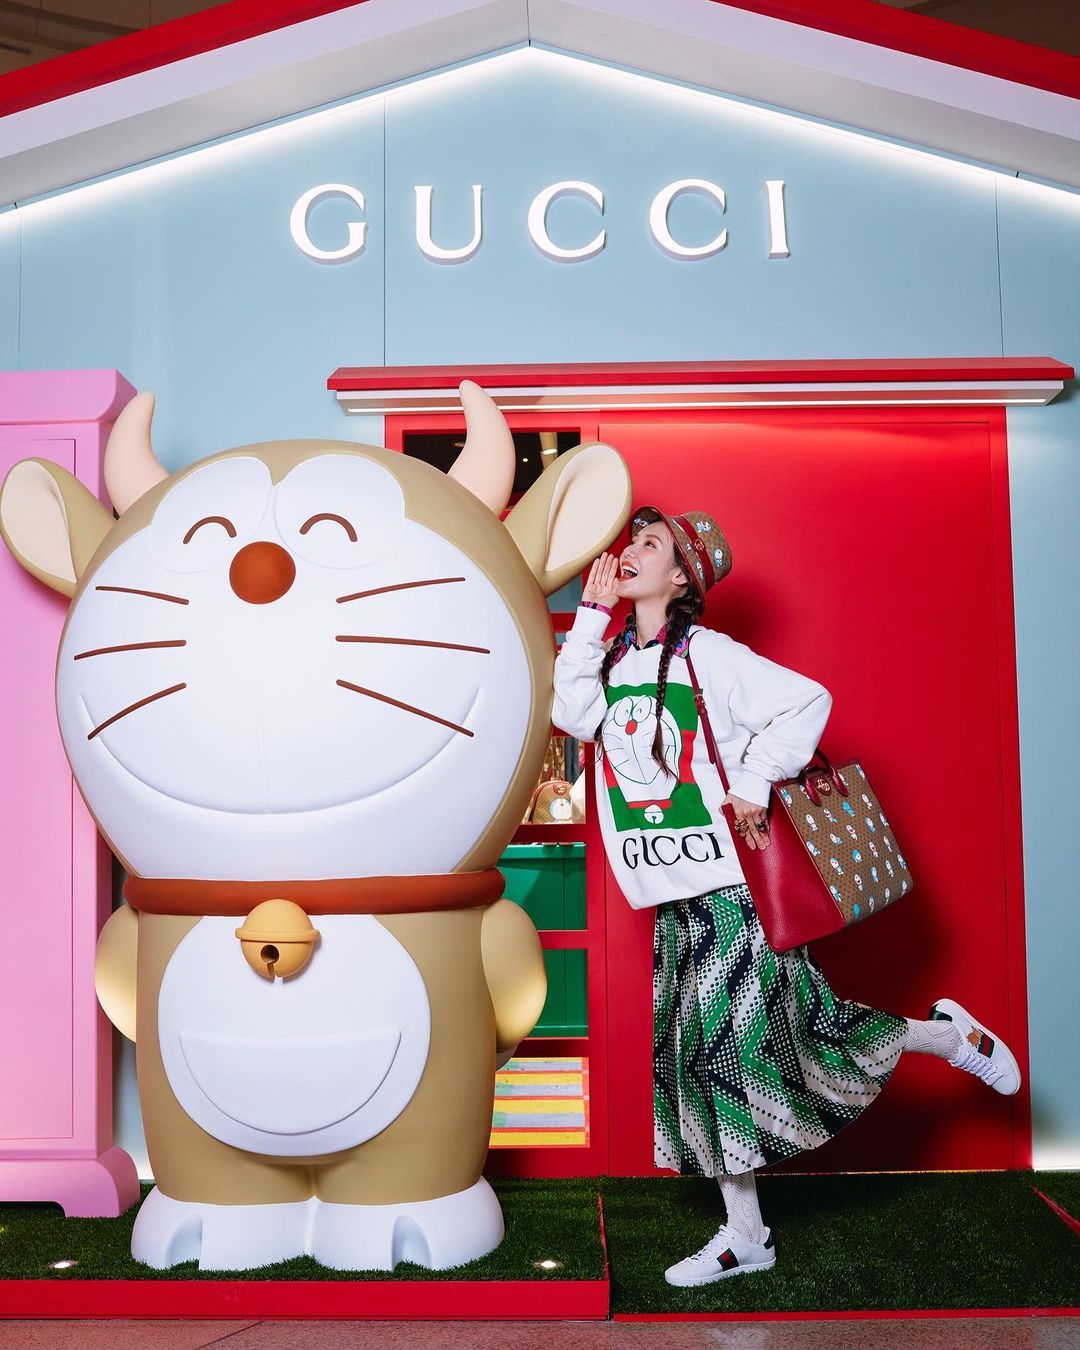 Điểm chụp ảnh hot mùa Tết: Cửa hàng Gucci với mèo máy Doraemon